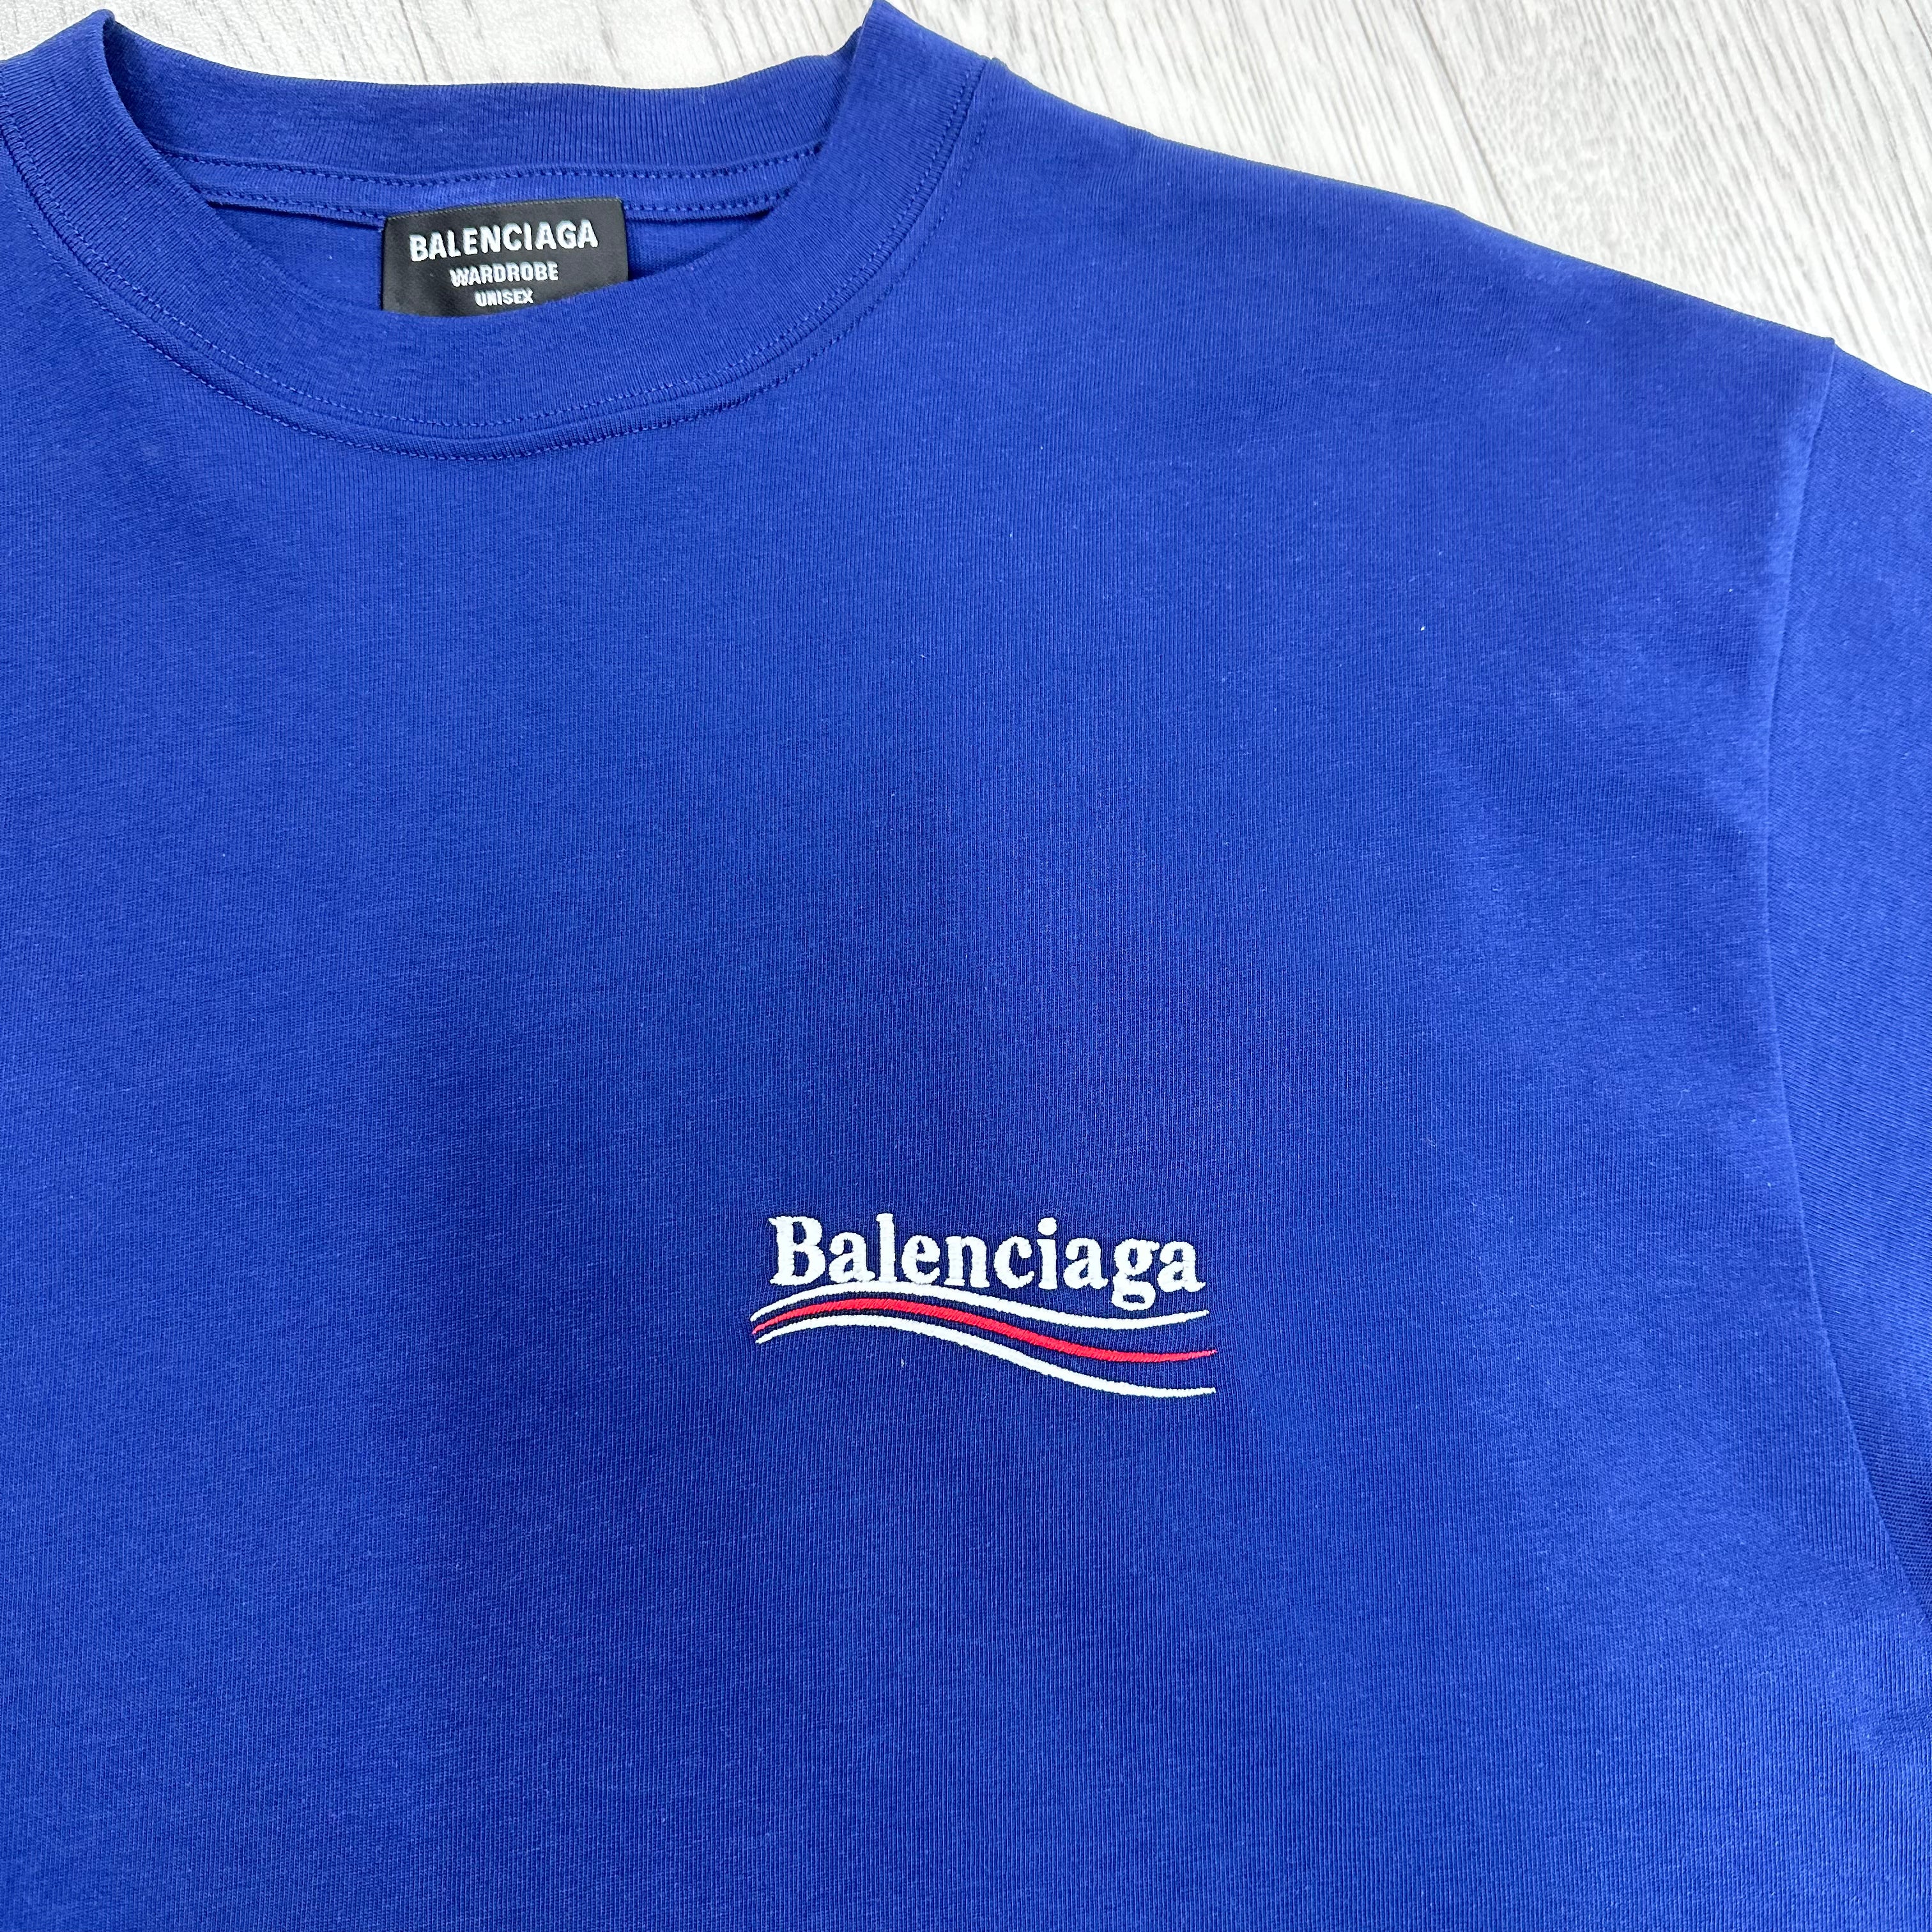 Blue Political Campaign T-Shirt.